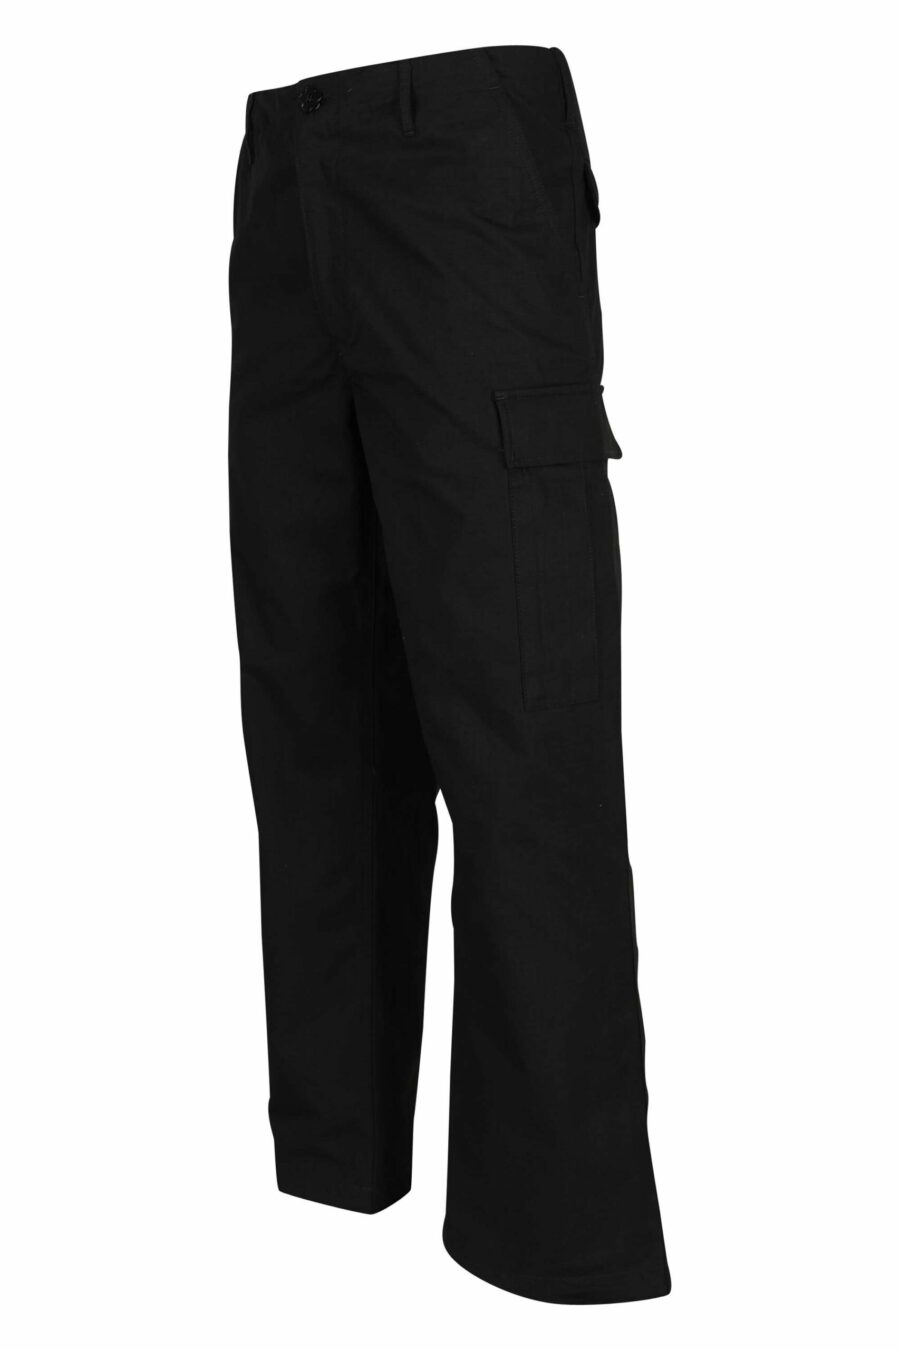 Pantalon cargo noir avec logo "boke flower" - 3612230618855 1 à l'échelle